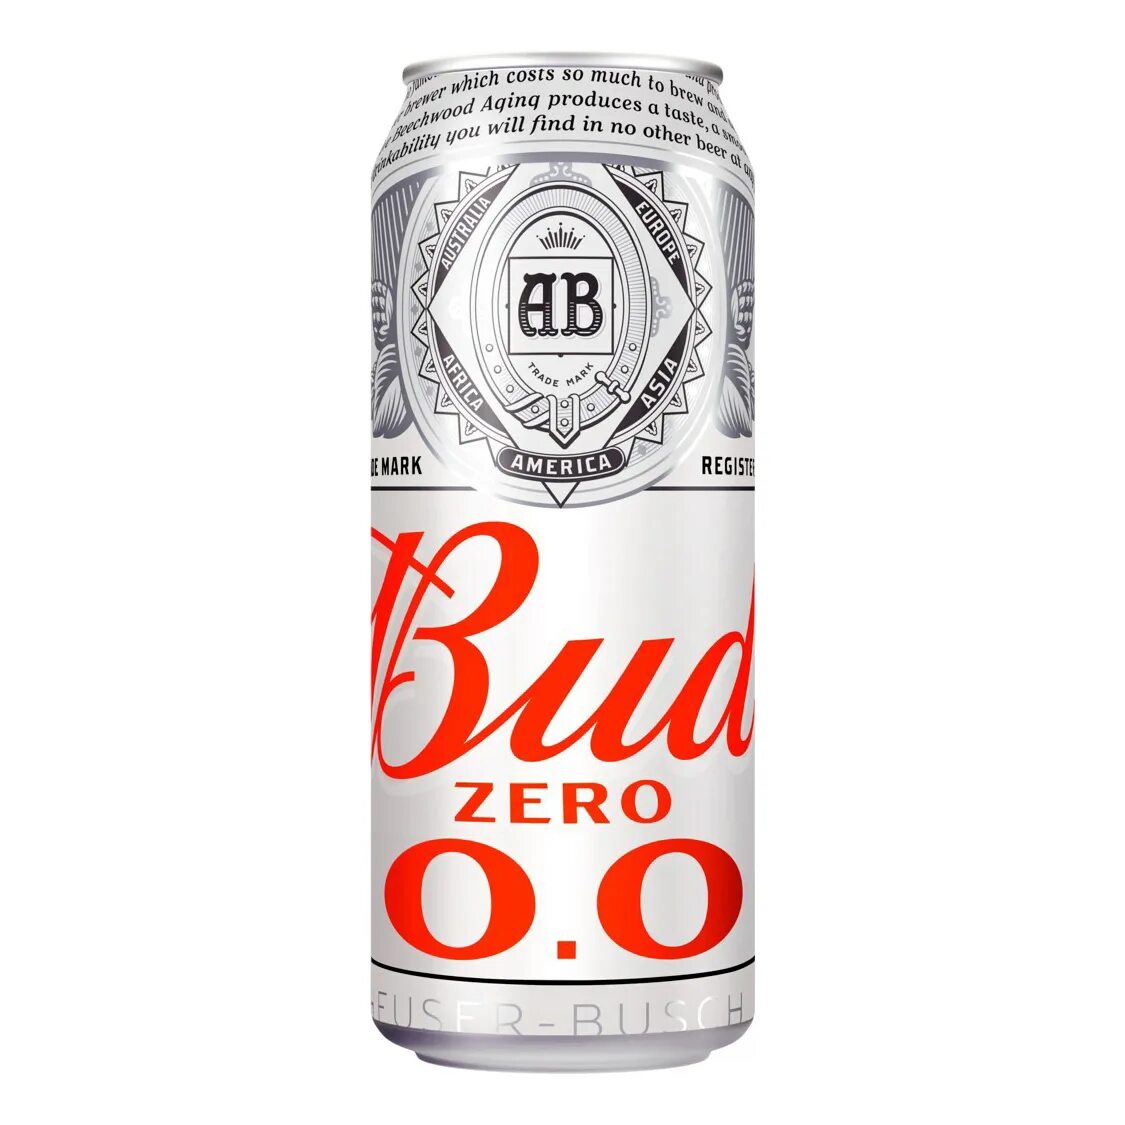 Пиво 0.45 л ж б. Пиво "Bud" светлое 5% ж/б 0,45 л. Пивной напиток БАД безалкогольный 0,45л ж/б. Пиво Bud безалкогольное 0,5% ж/б, 0,45л. Пиво Bud ж/б 5% 0,45л.